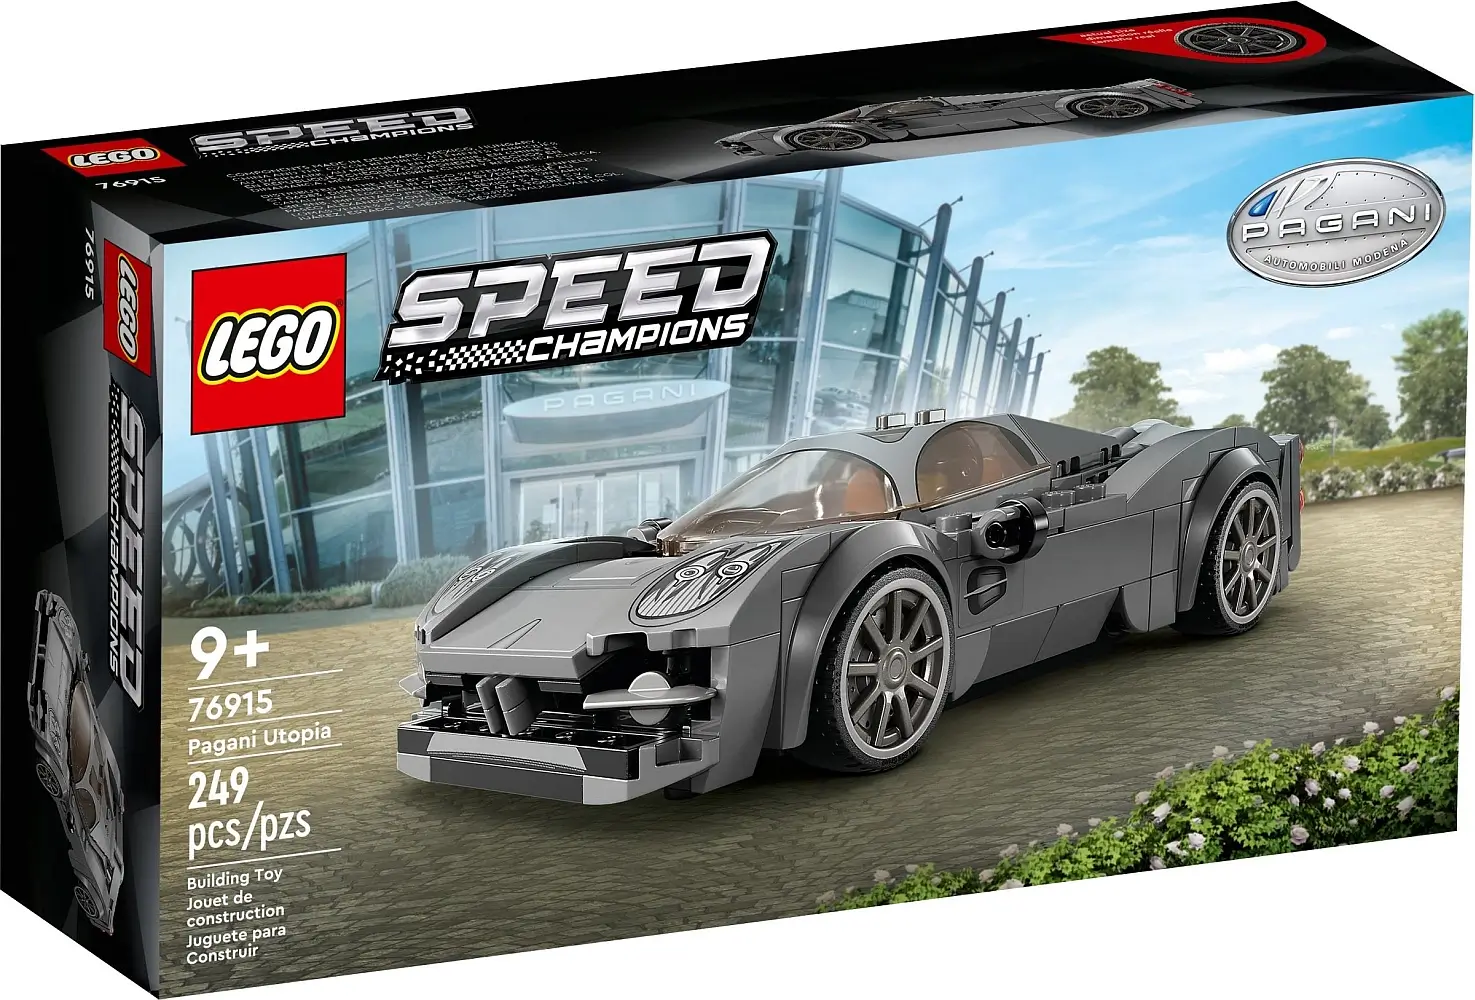 Pudełko zestawu 76915 z serii LEGO® Speed Champions – Pagani Utopia